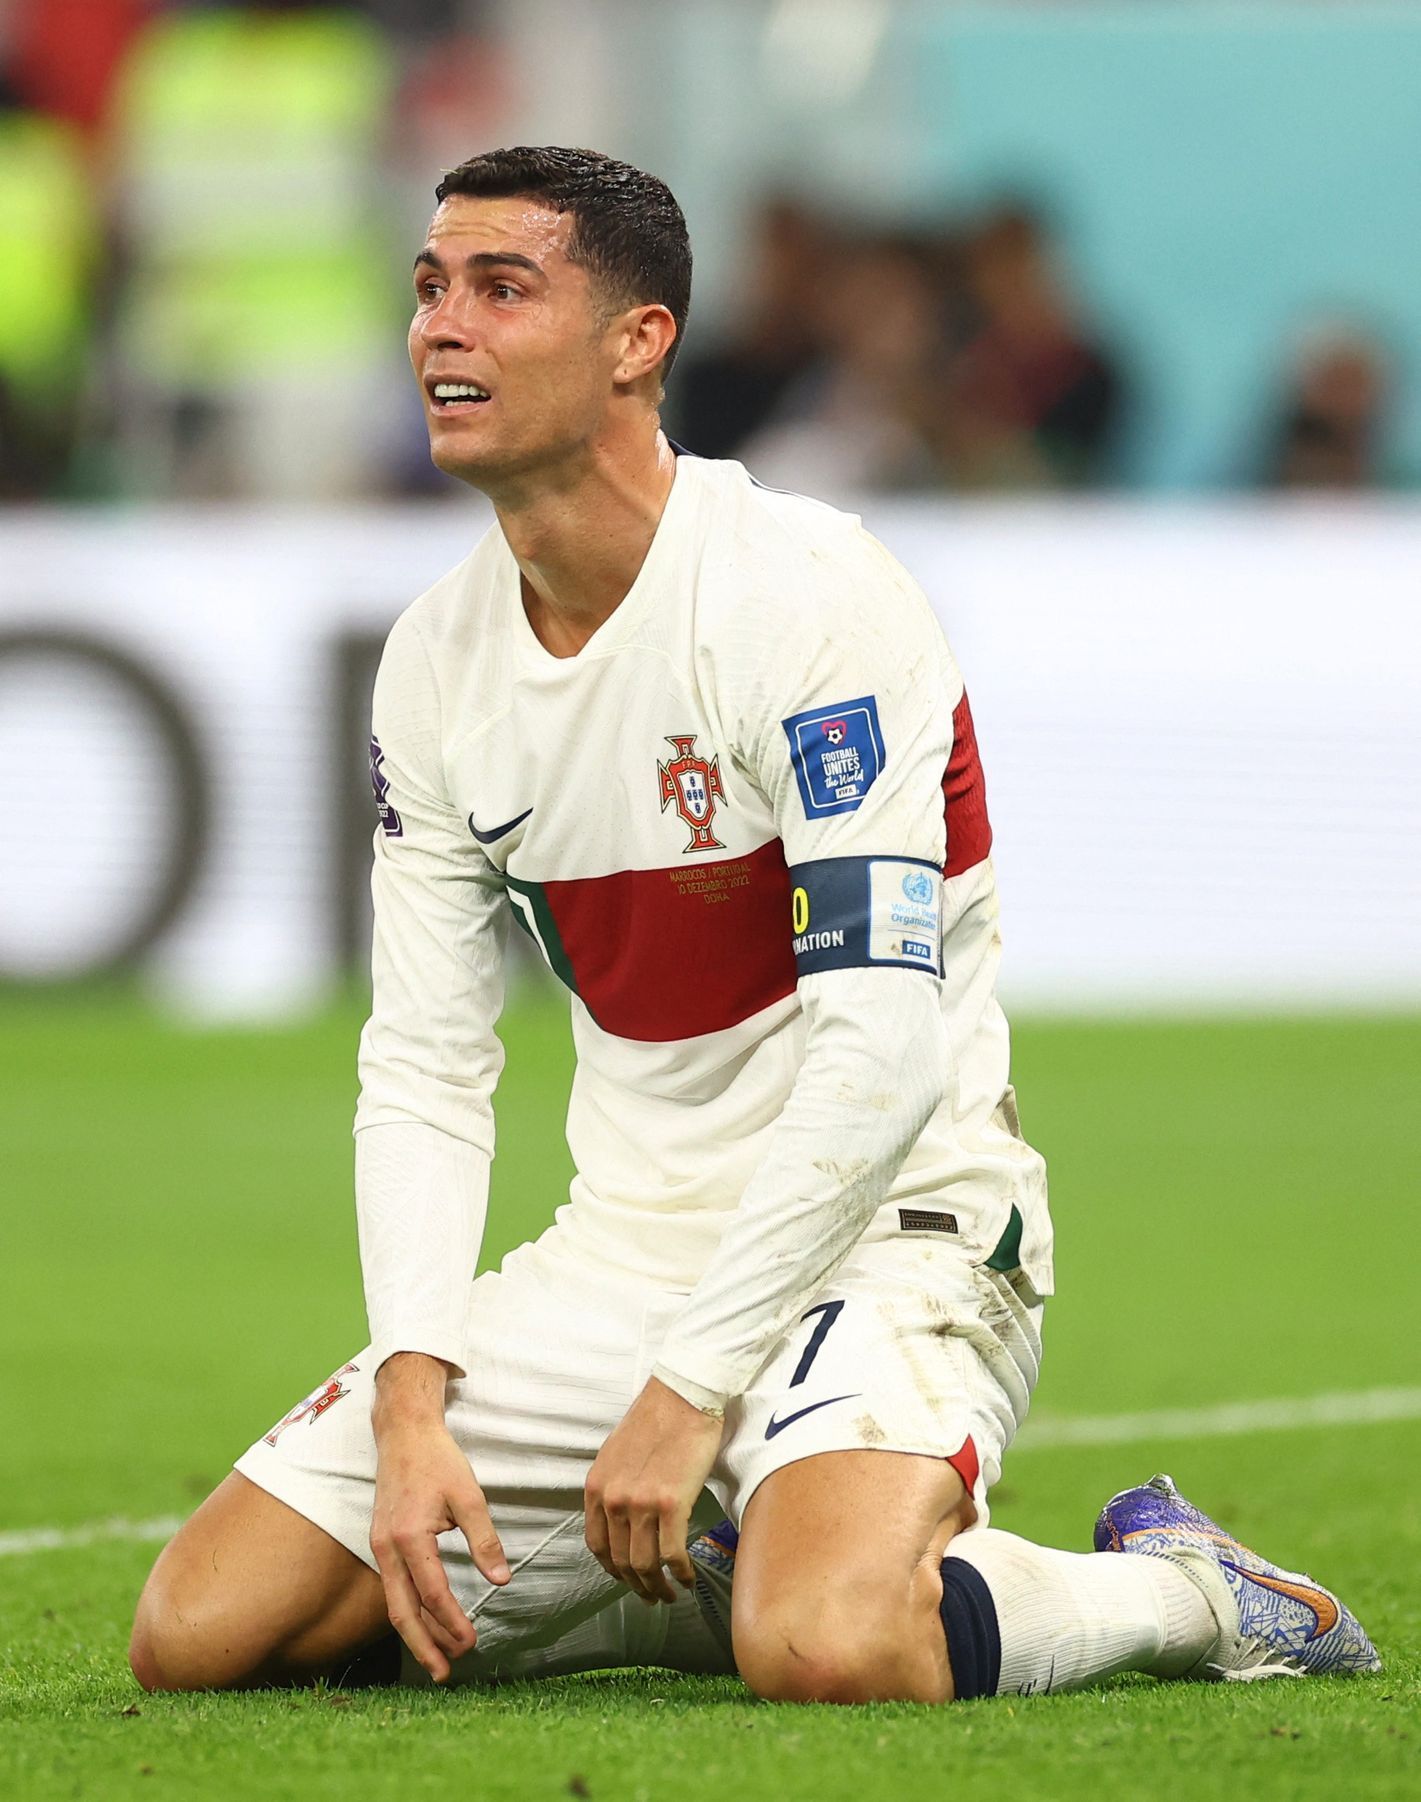 Zklamaný Cristiano Ronaldo po porážce ve čtvrtfinále MS 2022 Maroko - Portugalsko